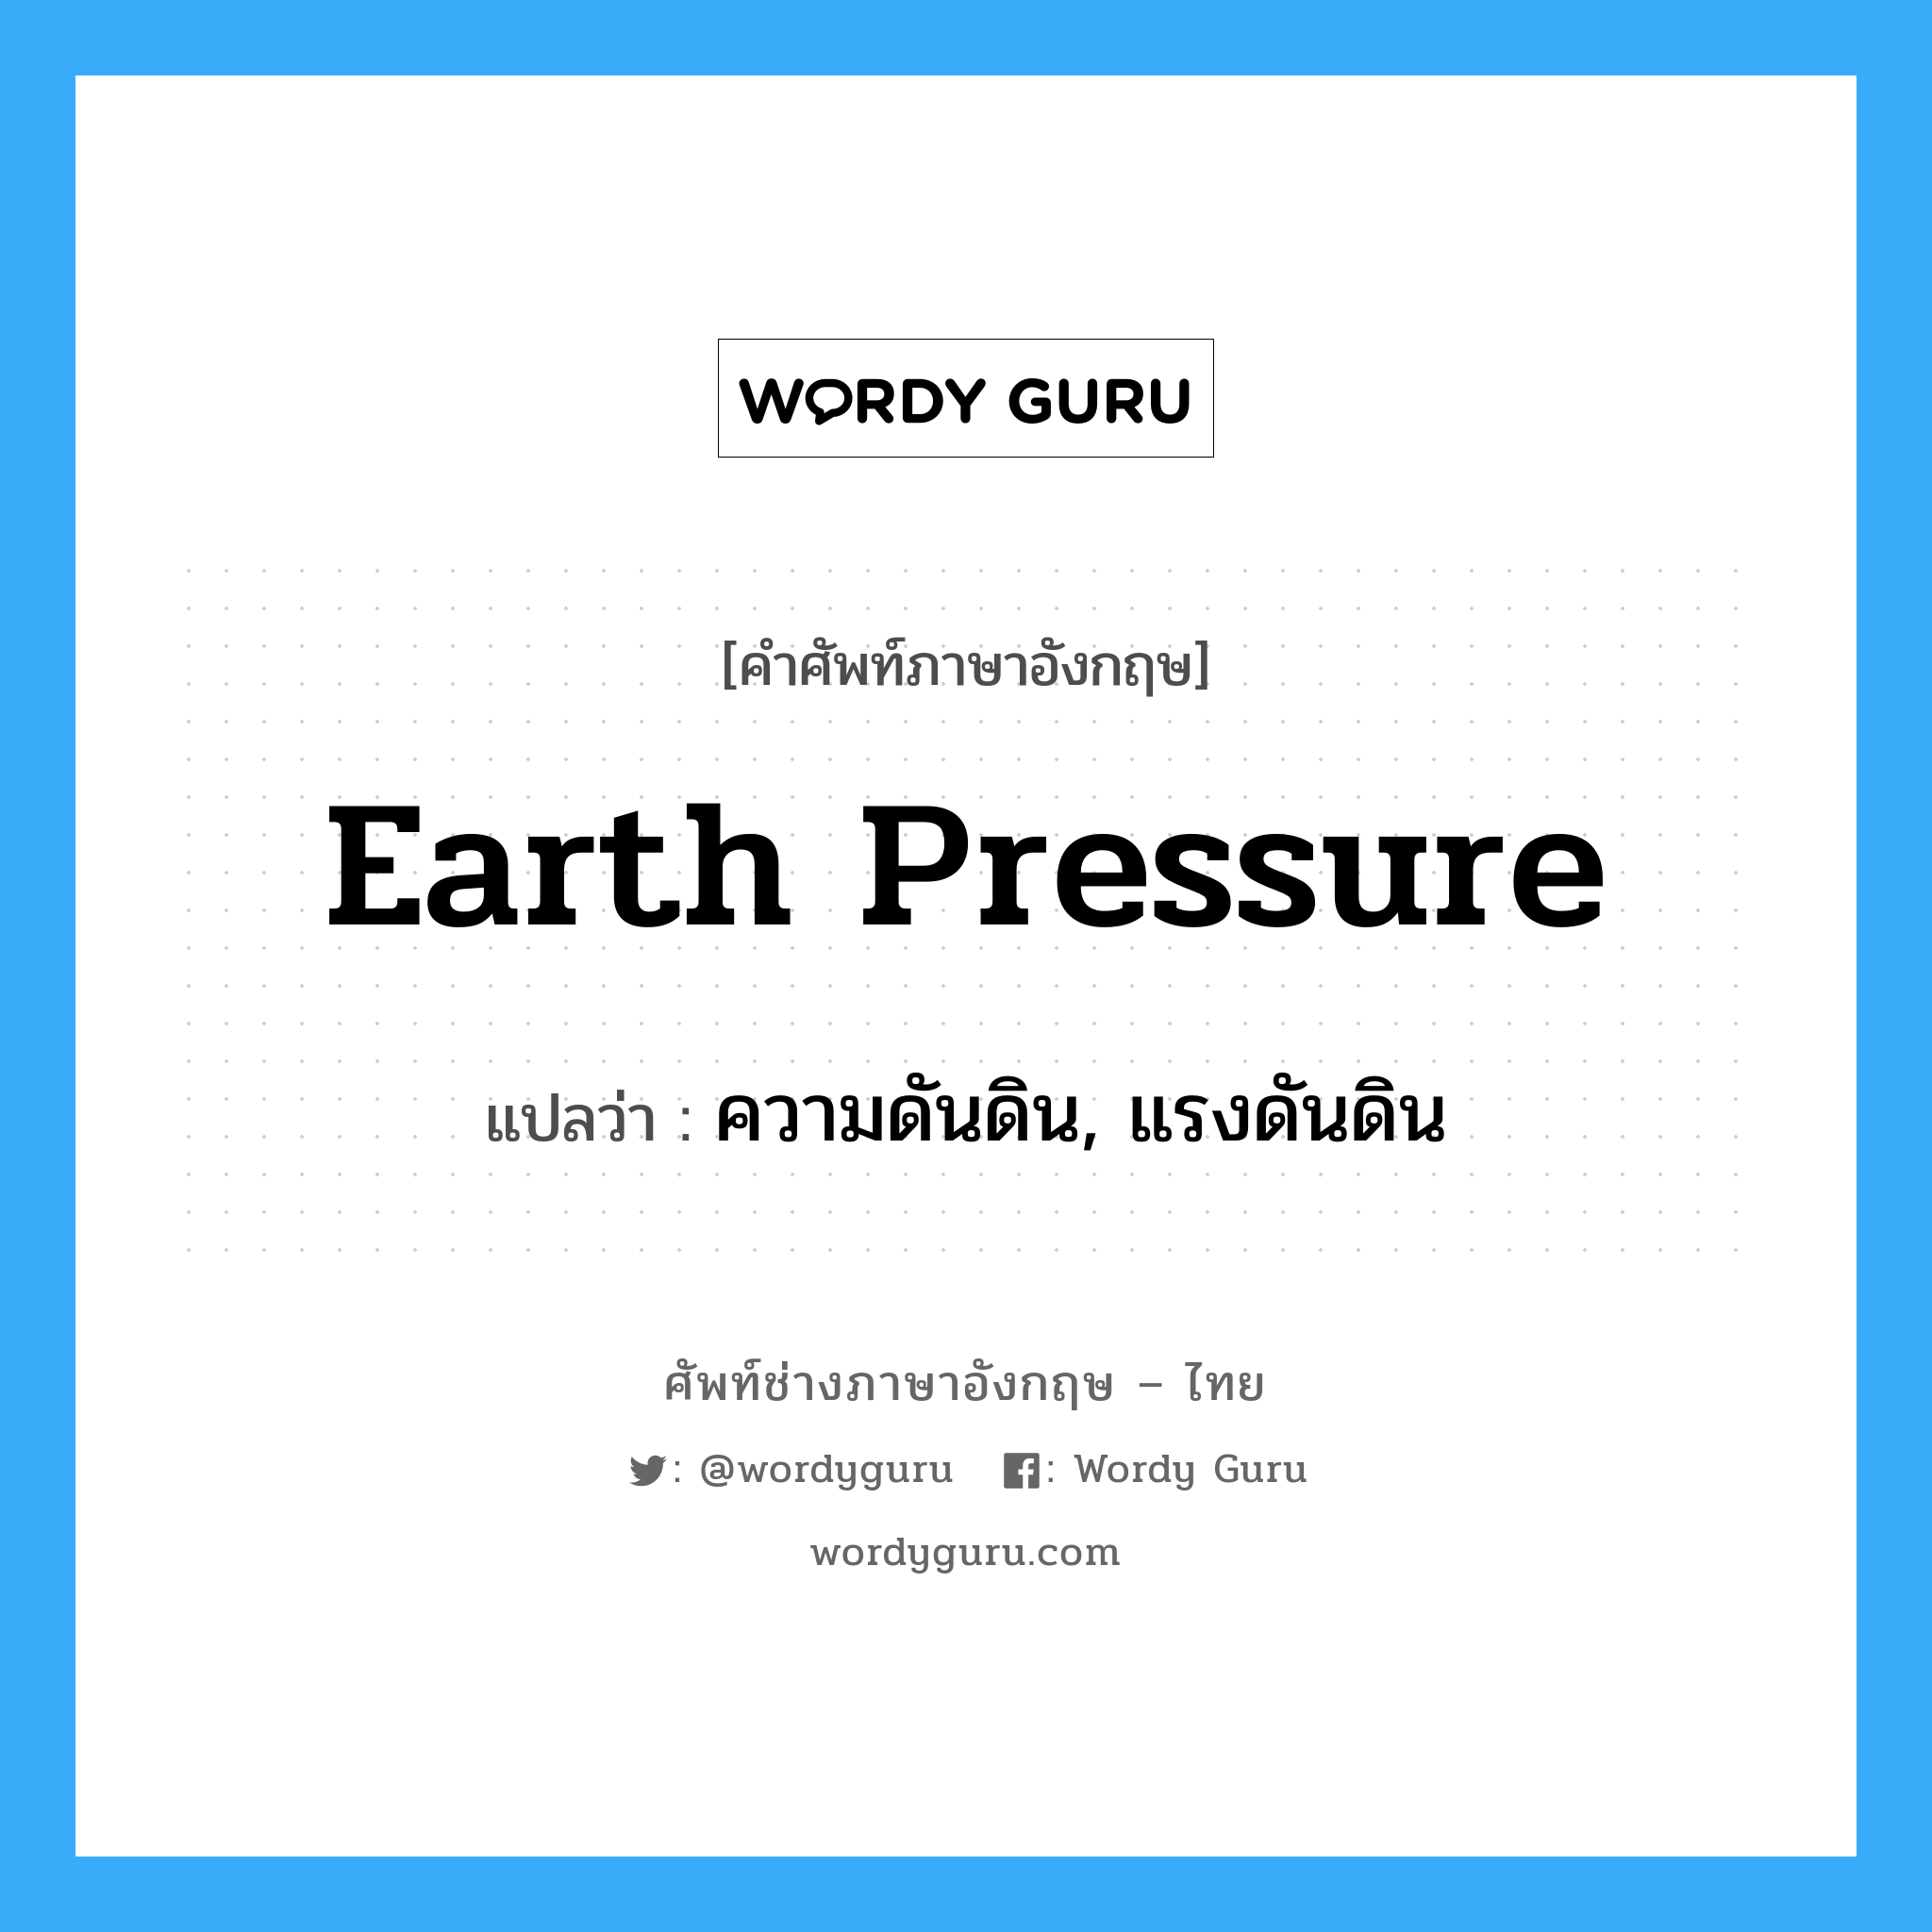 earth pressure แปลว่า?, คำศัพท์ช่างภาษาอังกฤษ - ไทย earth pressure คำศัพท์ภาษาอังกฤษ earth pressure แปลว่า ความดันดิน, แรงดันดิน